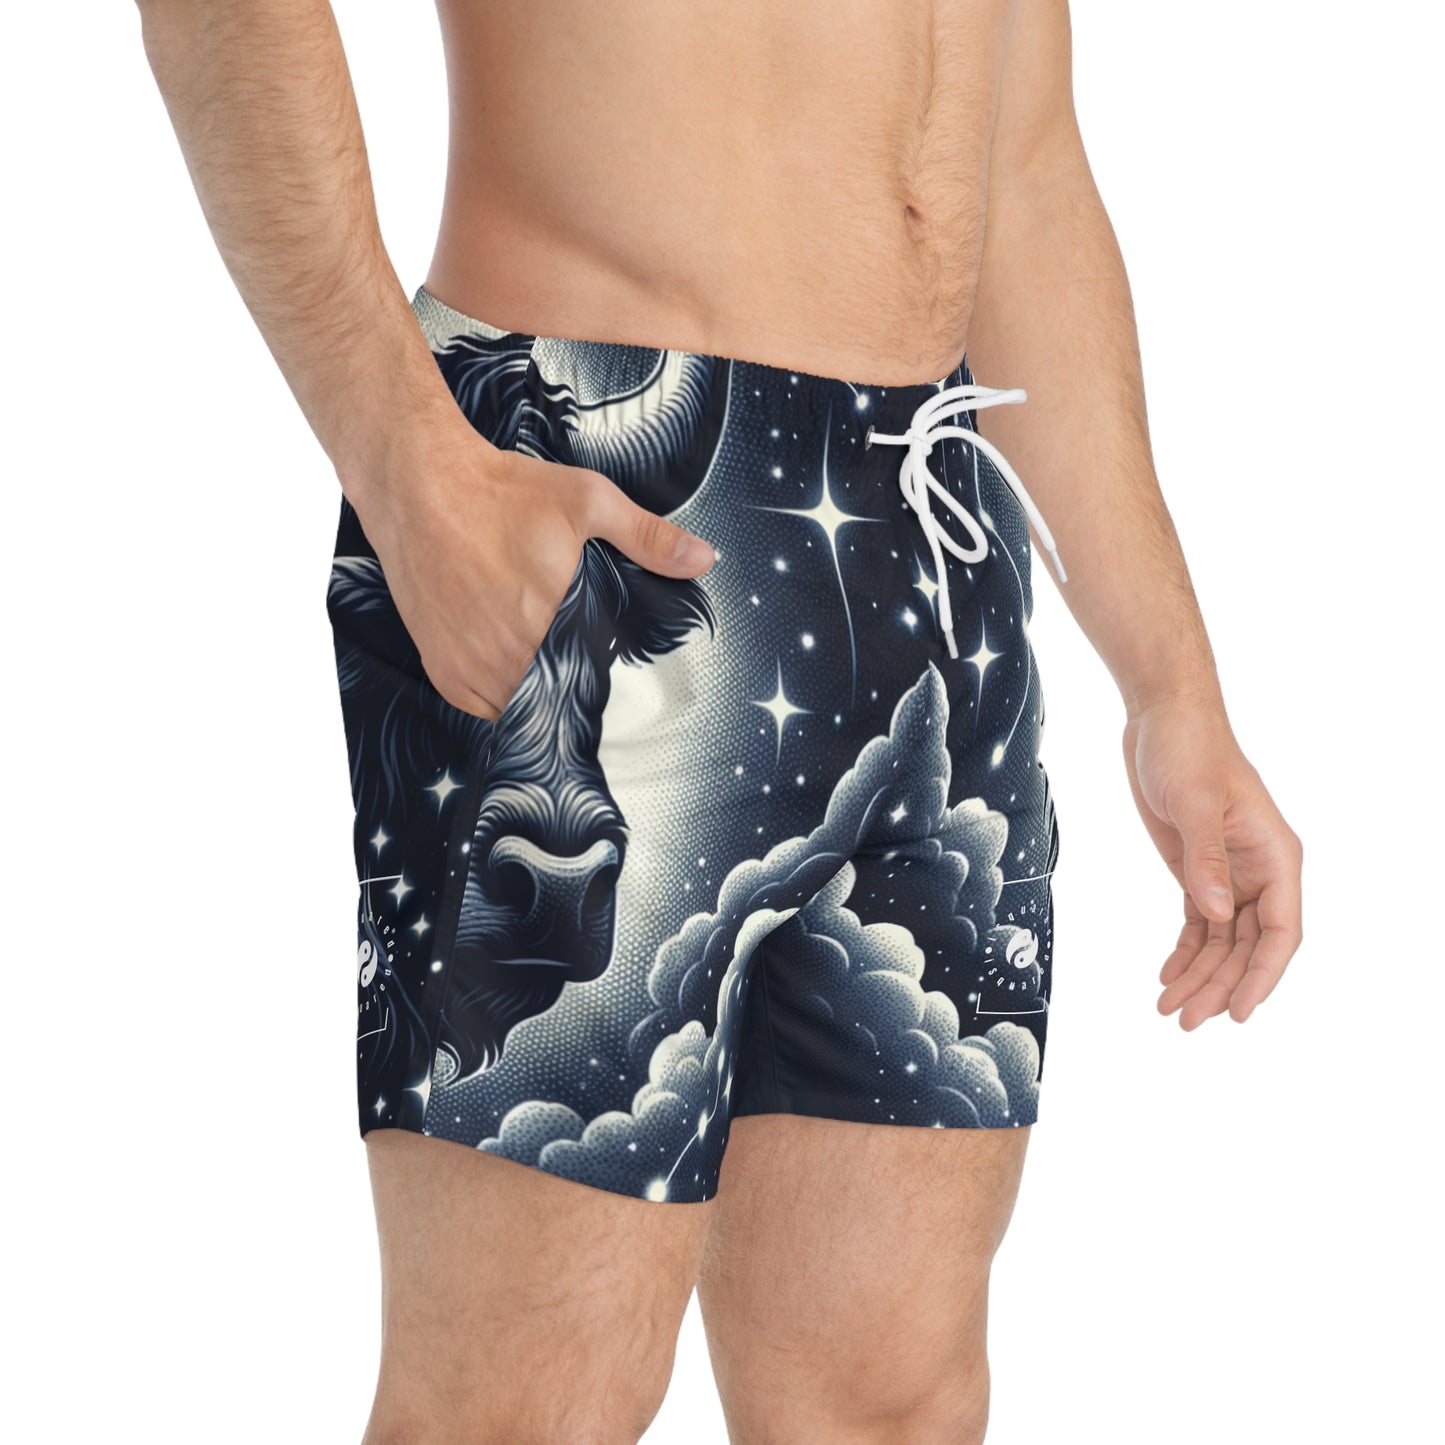 Celestial Taurine Constellation - Swim Trunks for Men